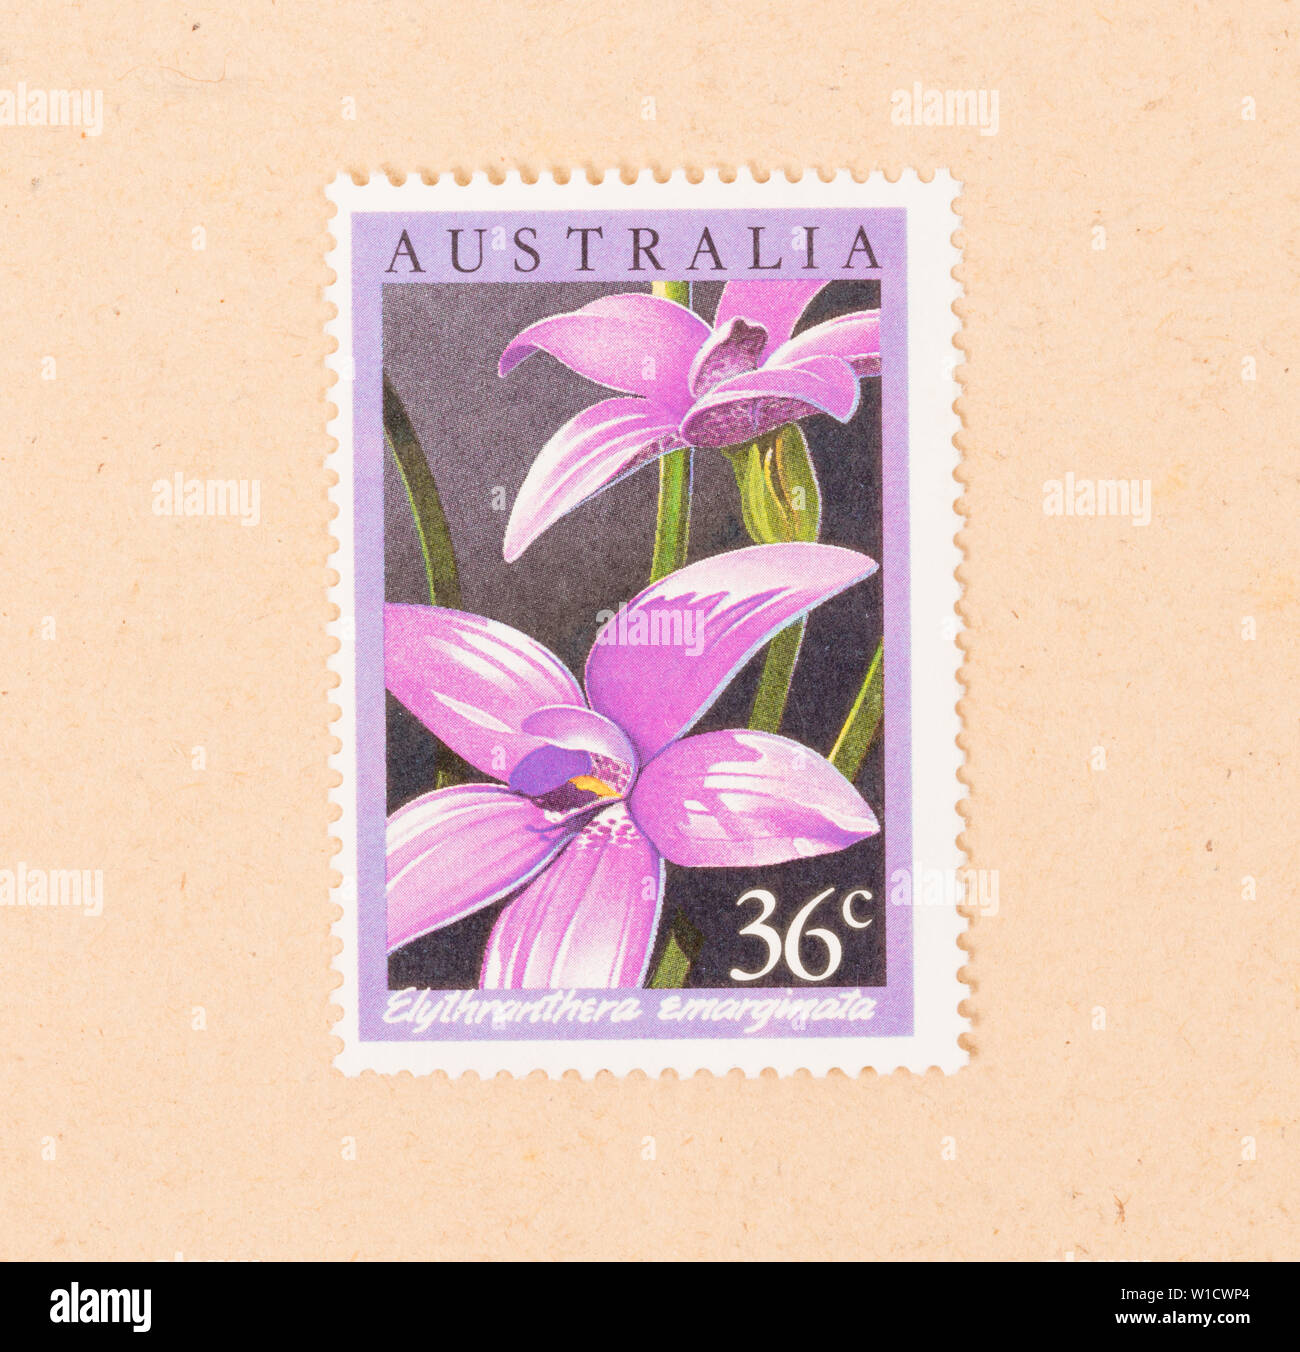 Australien - ca. 1980: einen Stempel in Australien gedruckten zeigt eine Blume (Elythranthera Emarginata), ca. 1980 Stockfoto